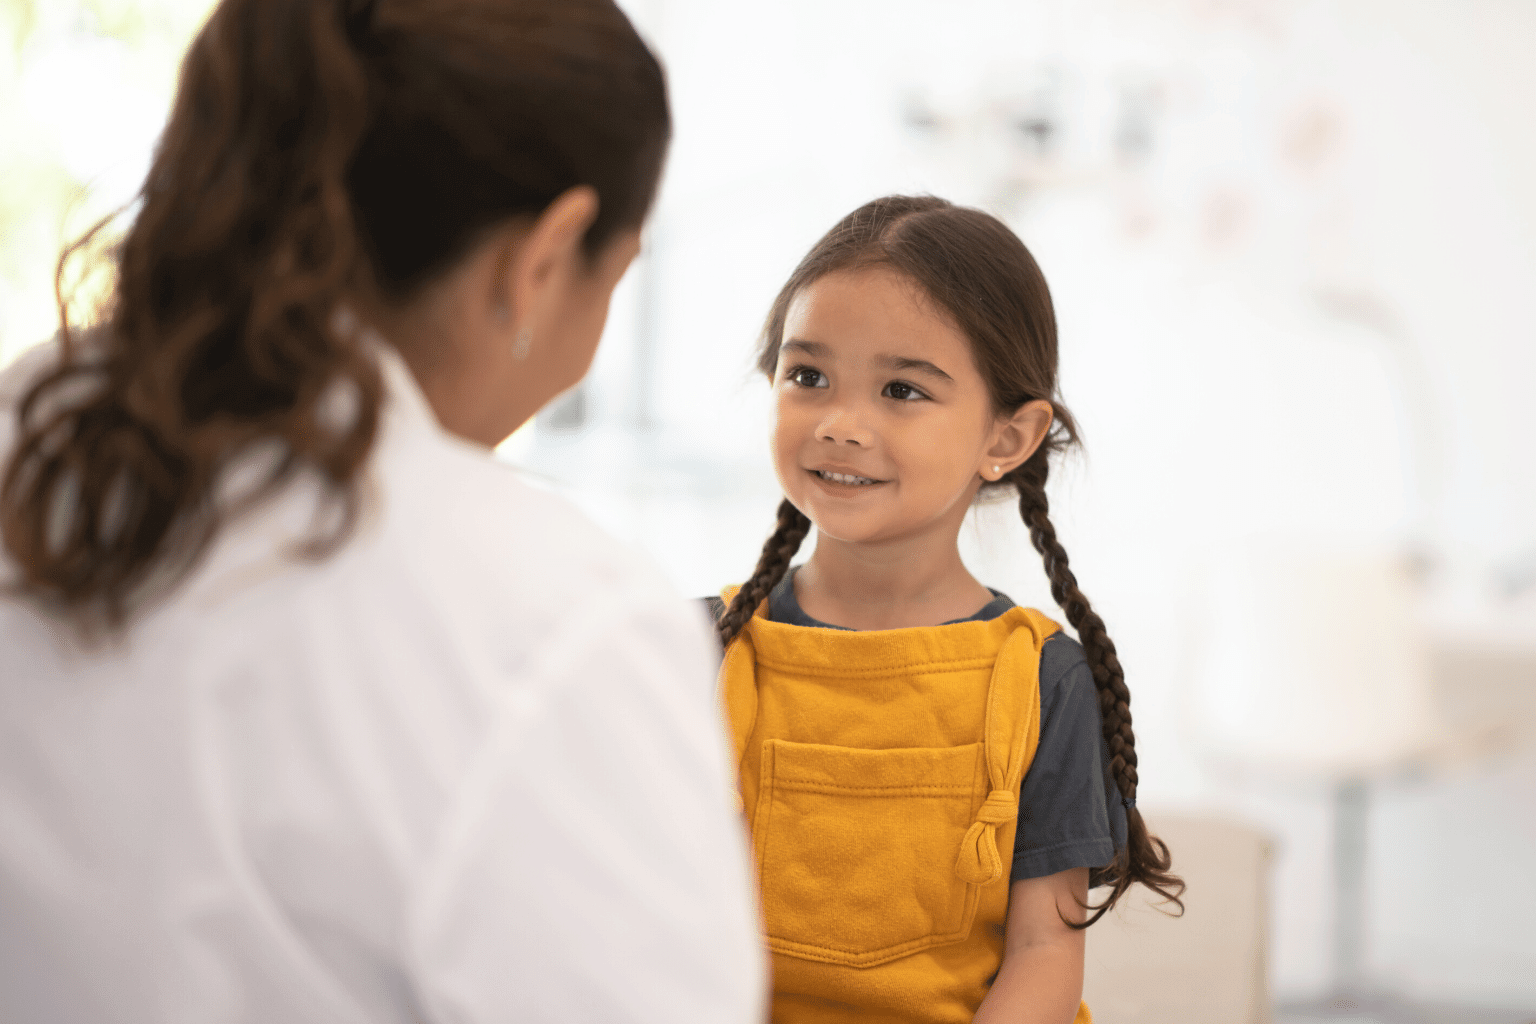 Pediatric patient care